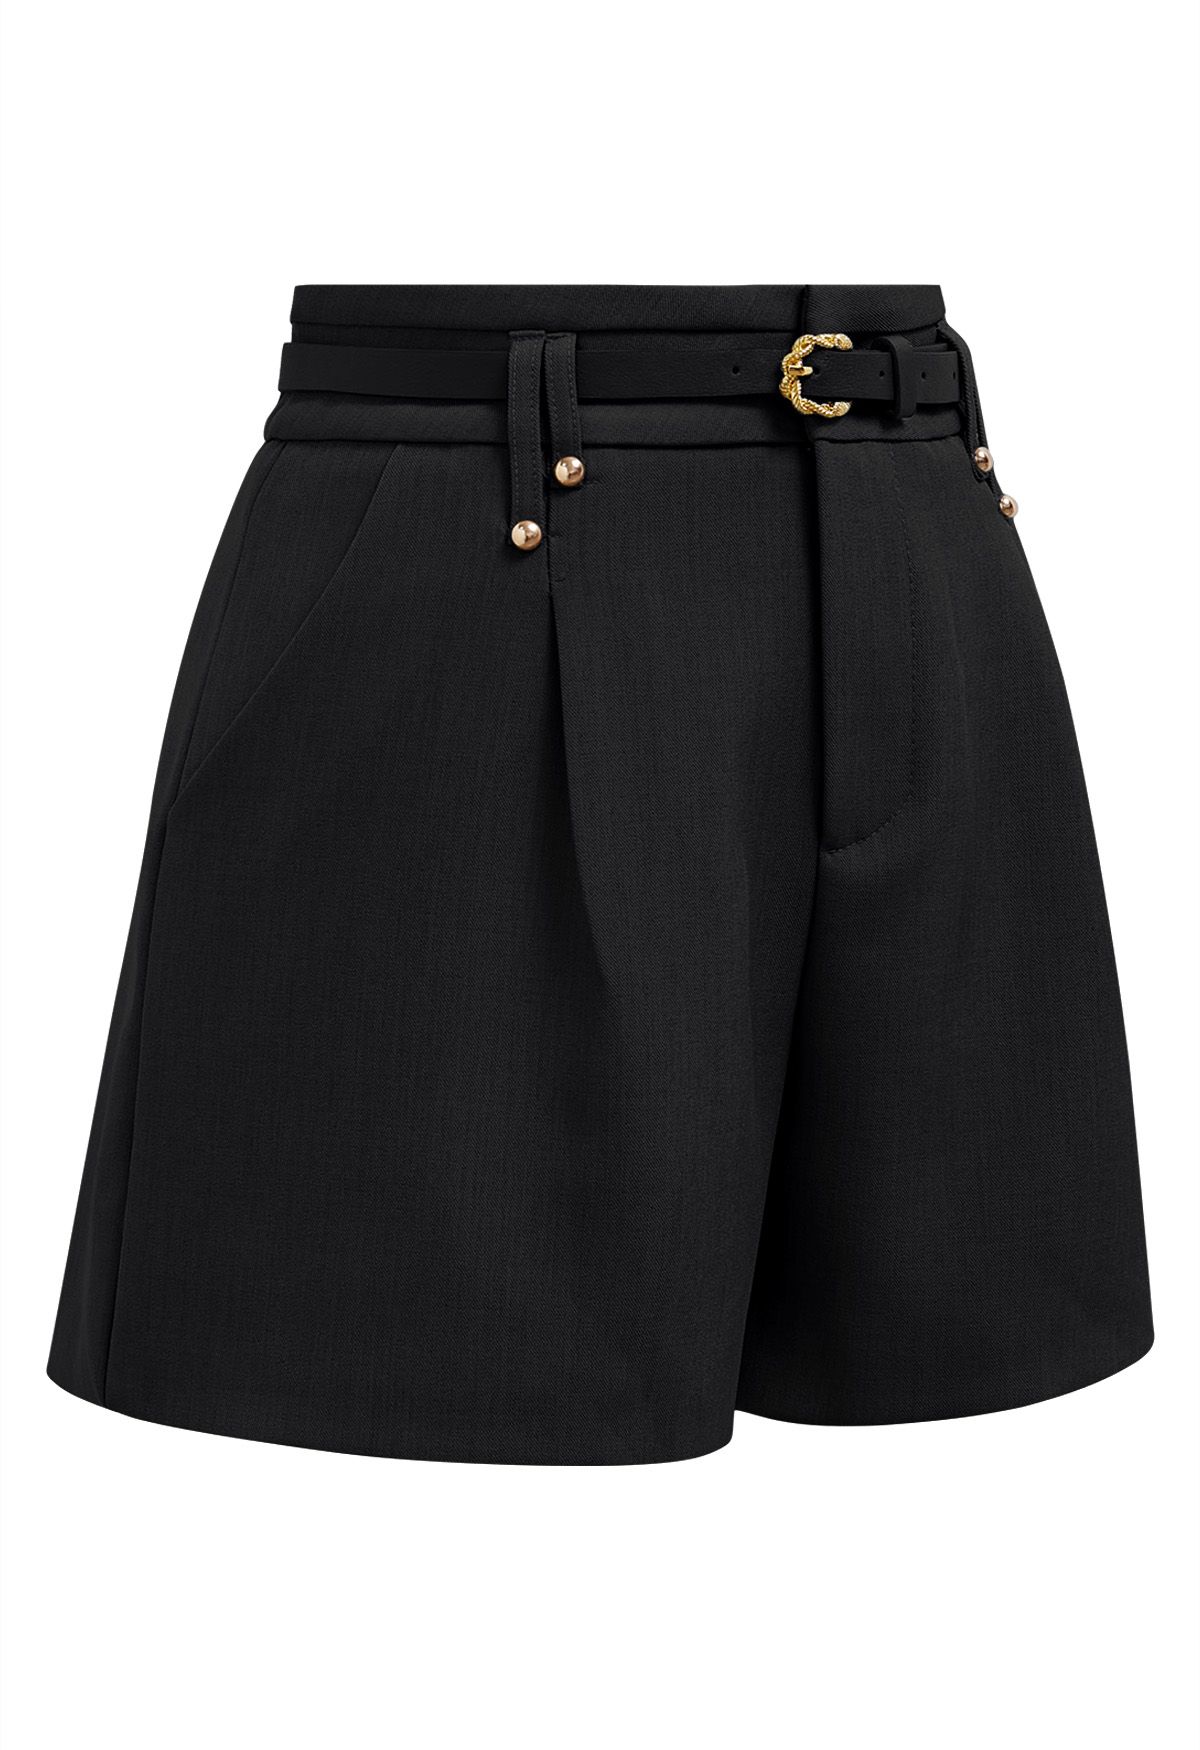 Einfarbige Shorts mit Gürtel in Schwarz